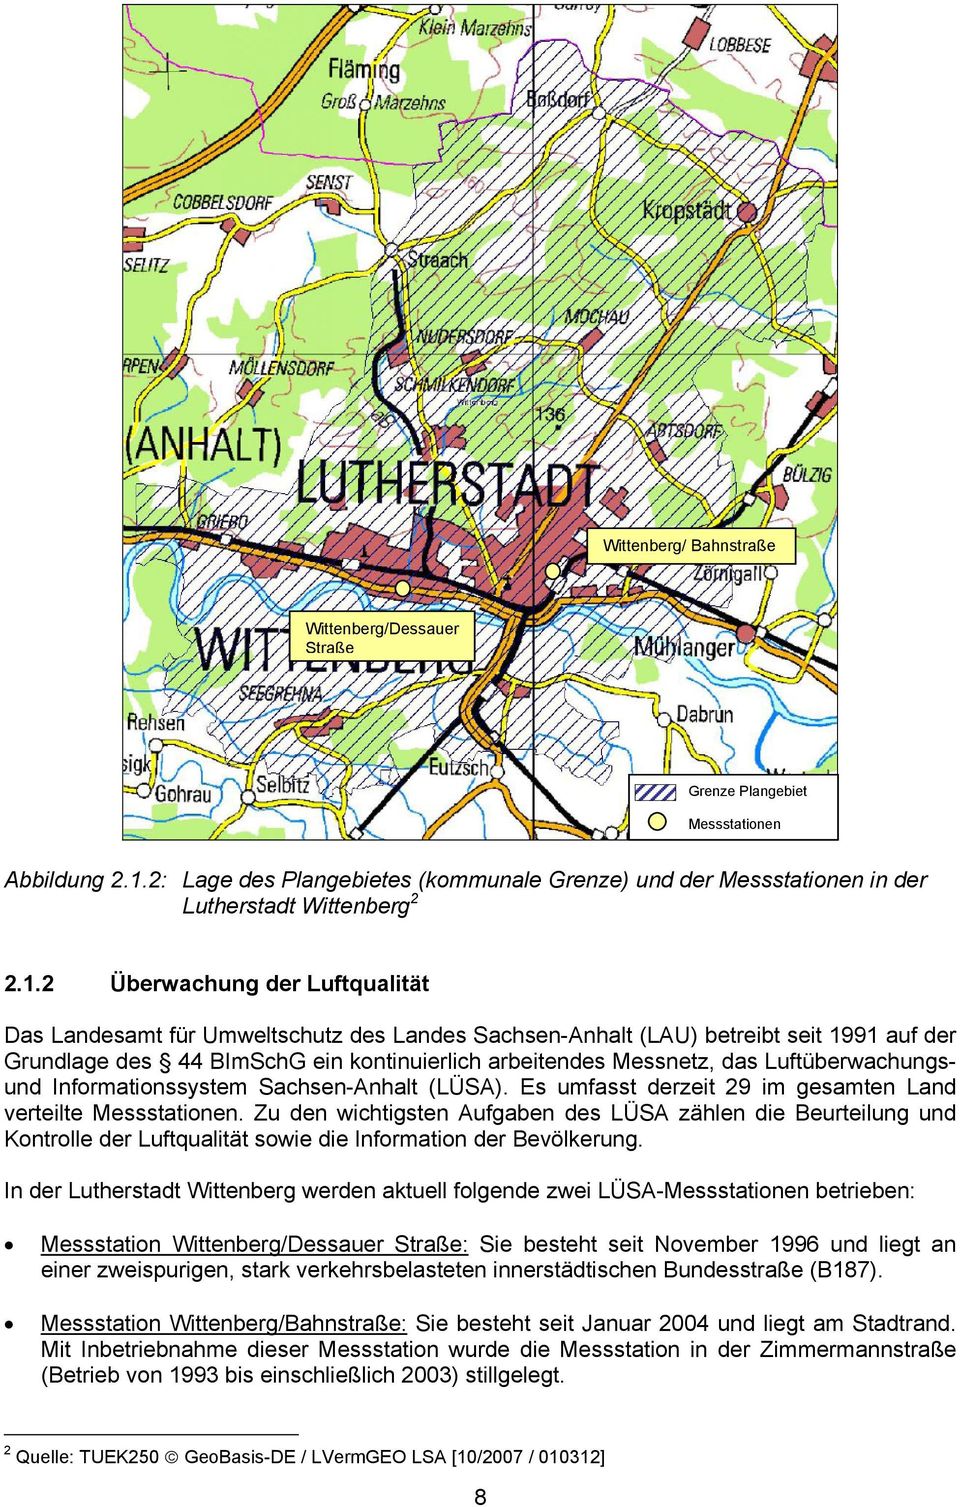 2 Überwachung der Luftqualität Das Landesamt für Umweltschutz des Landes Sachsen-Anhalt (LAU) betreibt seit 1991 auf der Grundlage des 44 BImSchG ein kontinuierlich arbeitendes Messnetz, das